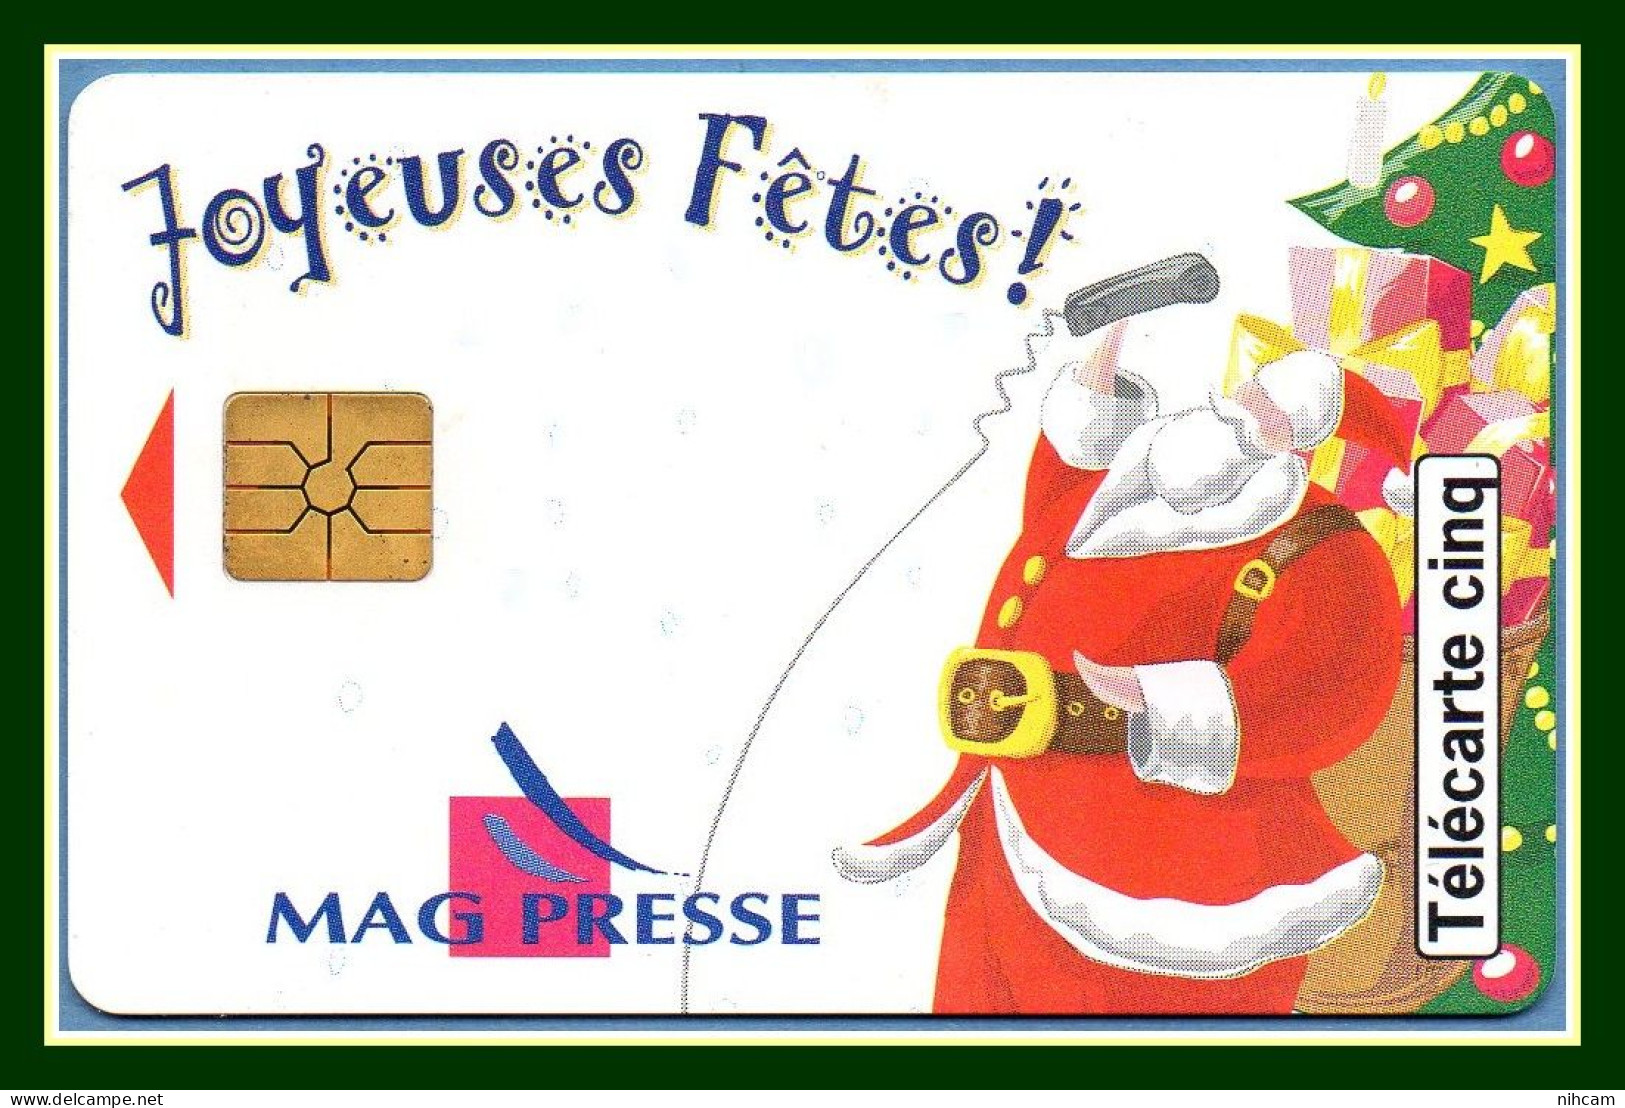 Télécarte France 5 U Neuve Mag Presse Joyeuses Fêtes Père Noël 10/96 17000 Ex (R) Mint - 5 Unidades